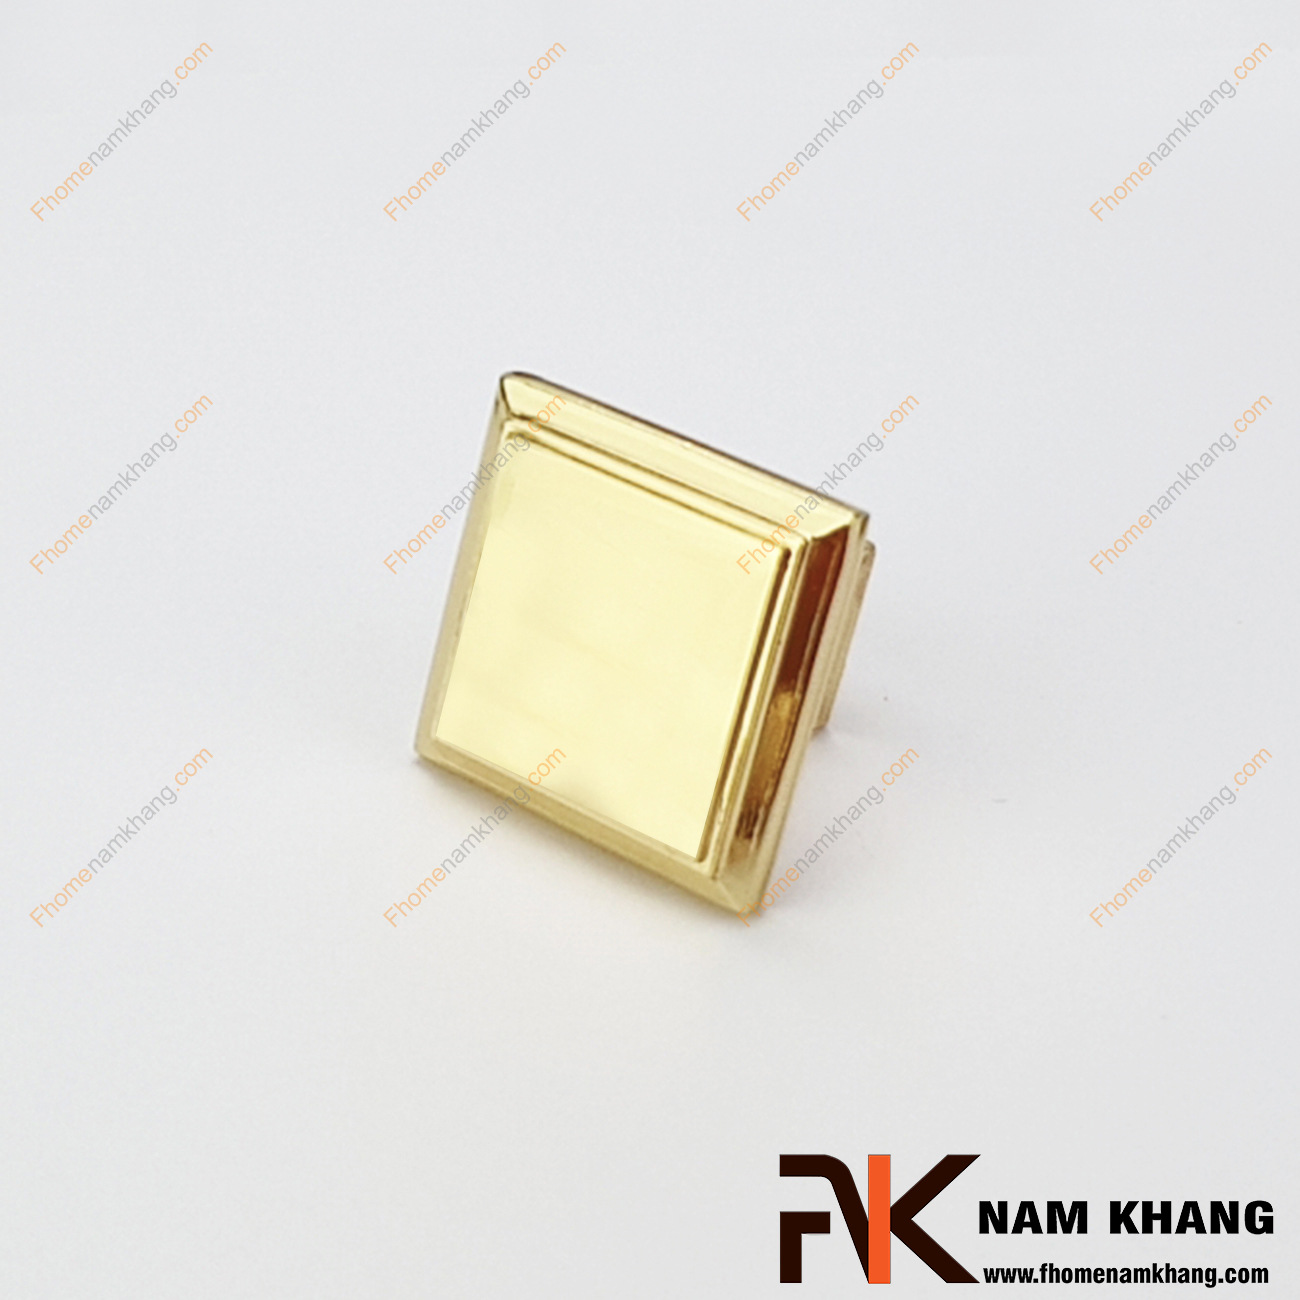 Núm cửa tủ dạng vuông màu vàng bóng NK230-V có thiết kế đơn giản từ hợp kim cao cấp với khuôn dạng đầu vuông và đế vuông đứng. Sản phẩm giúp thực hiện thao tác đóng mở cánh cửa tủ trở nên dễ dàng và thuận tiện. 